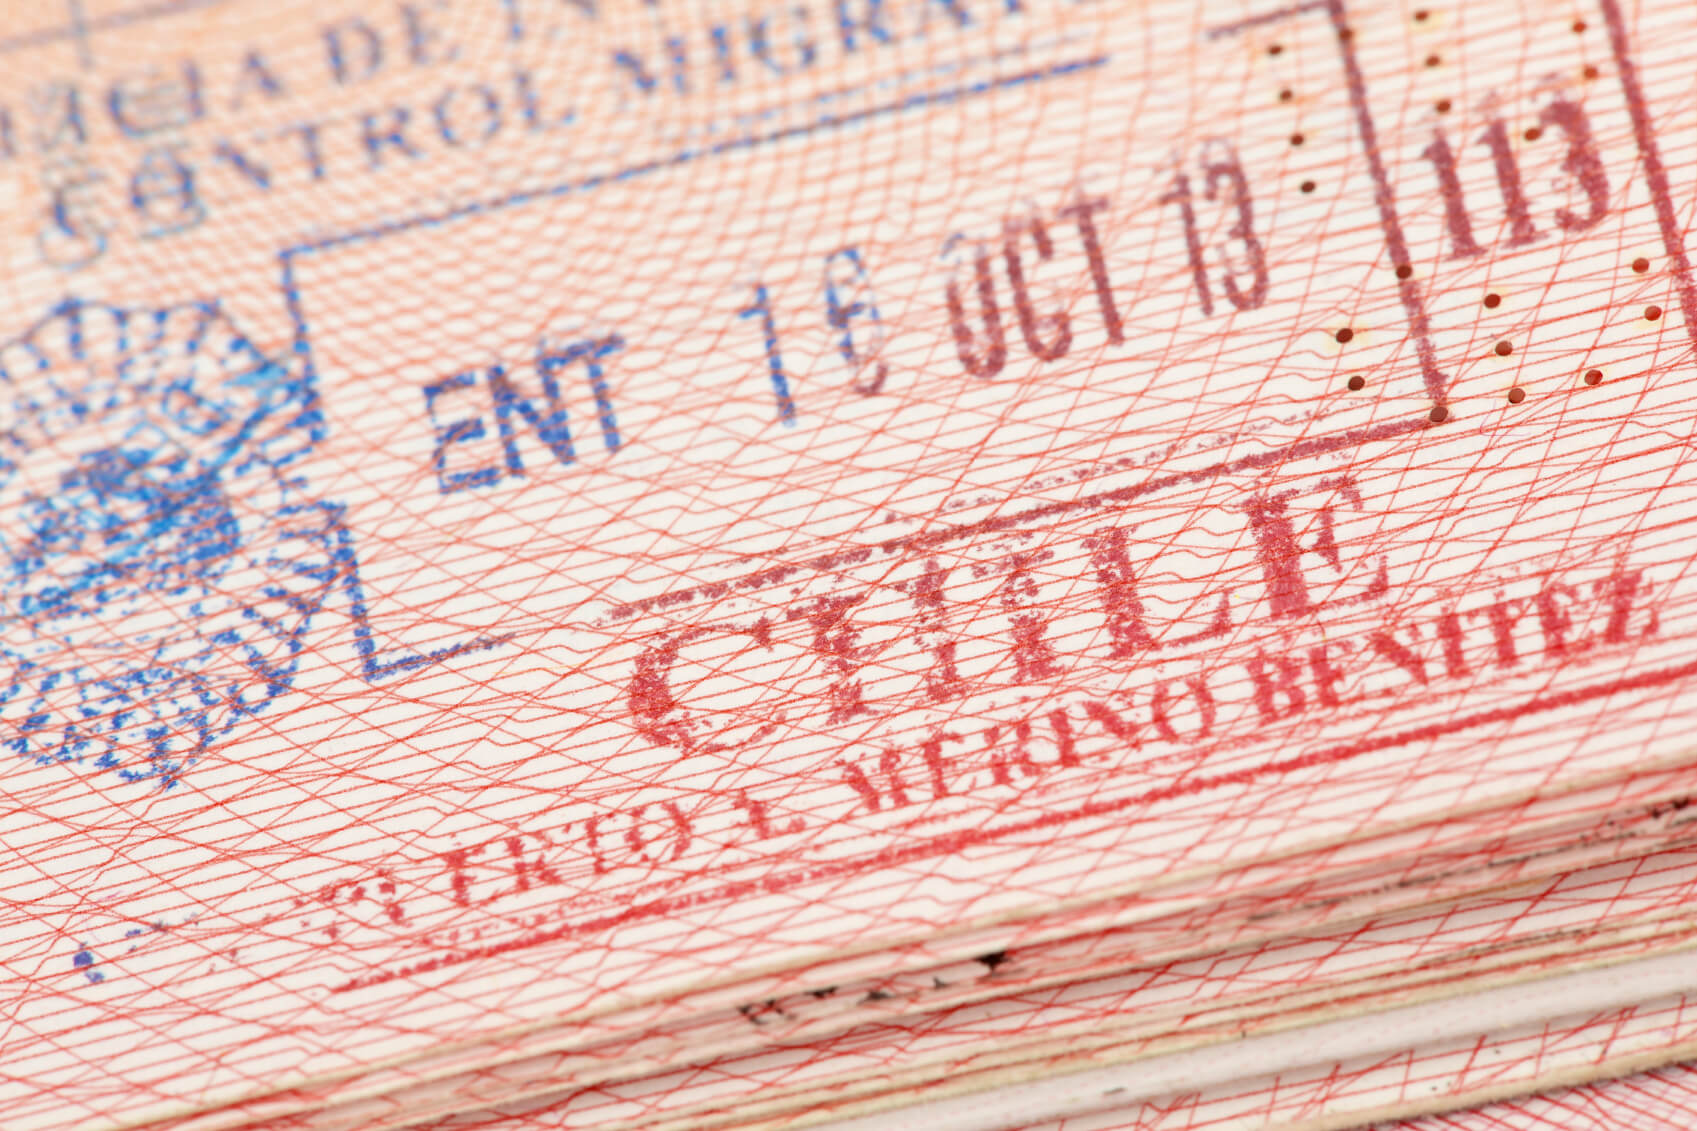 Timbre chileno en pasaporte